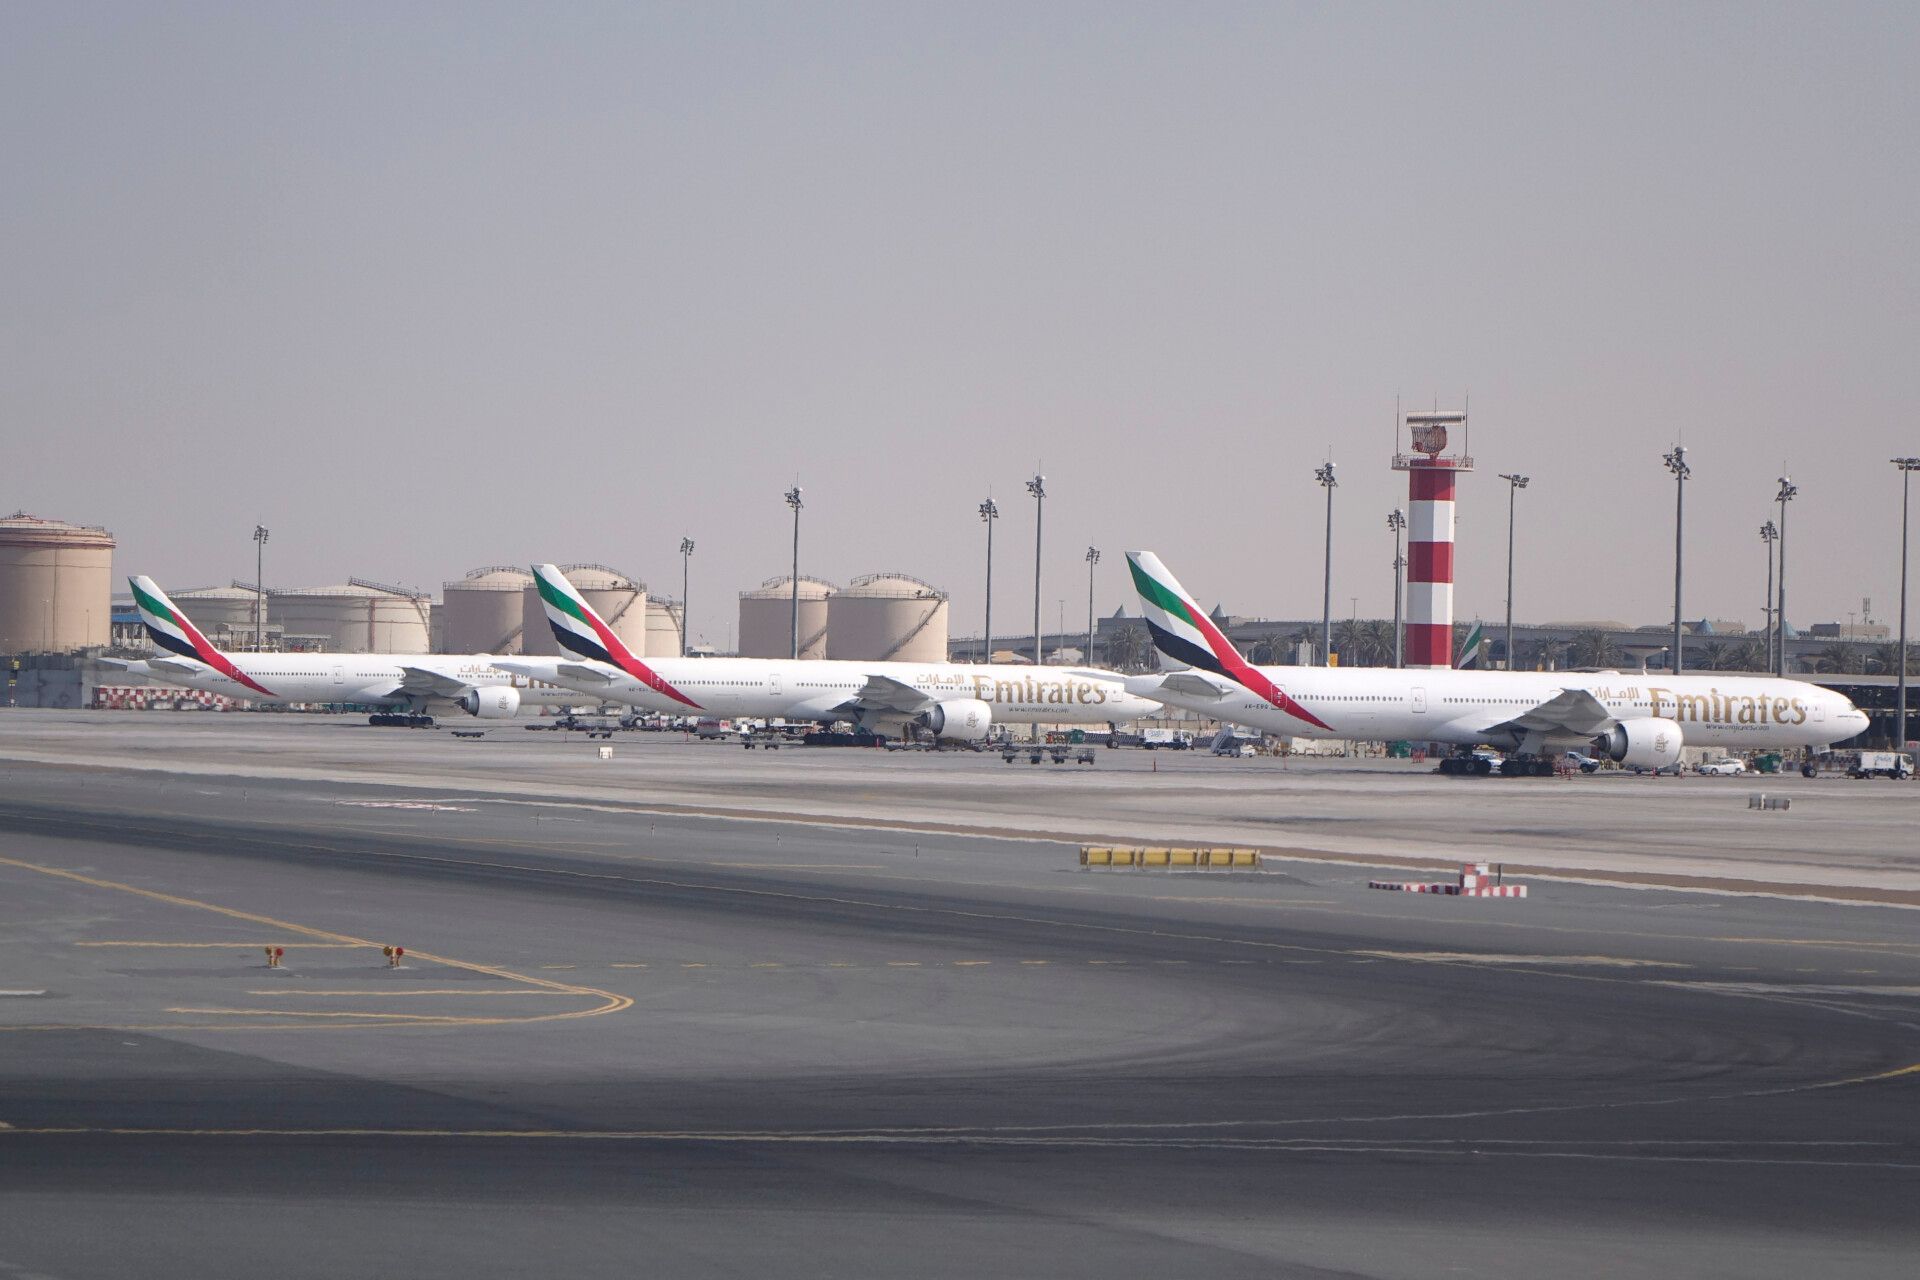 Emirates 777s